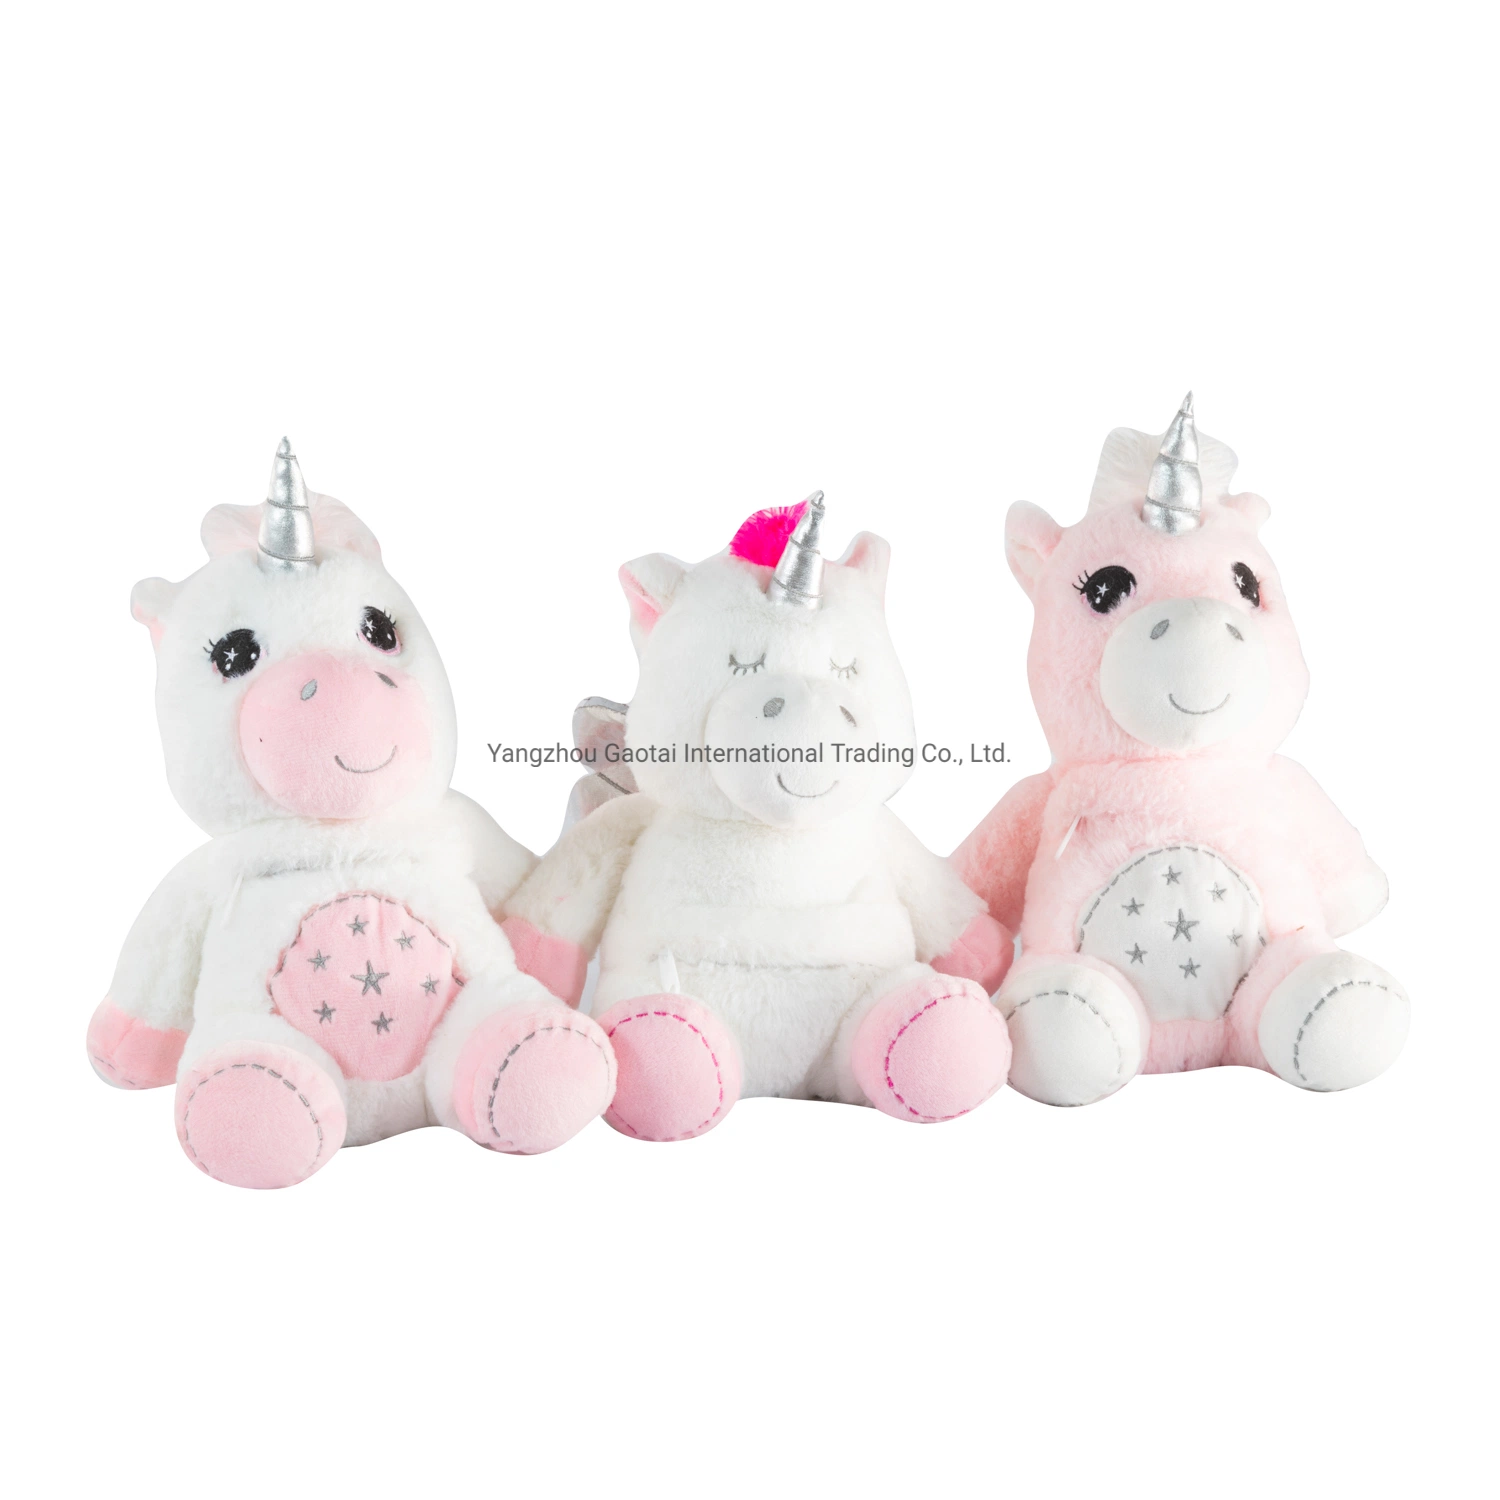 Juguete Lovely Baby Soft Unicornio Animal Plush Toy